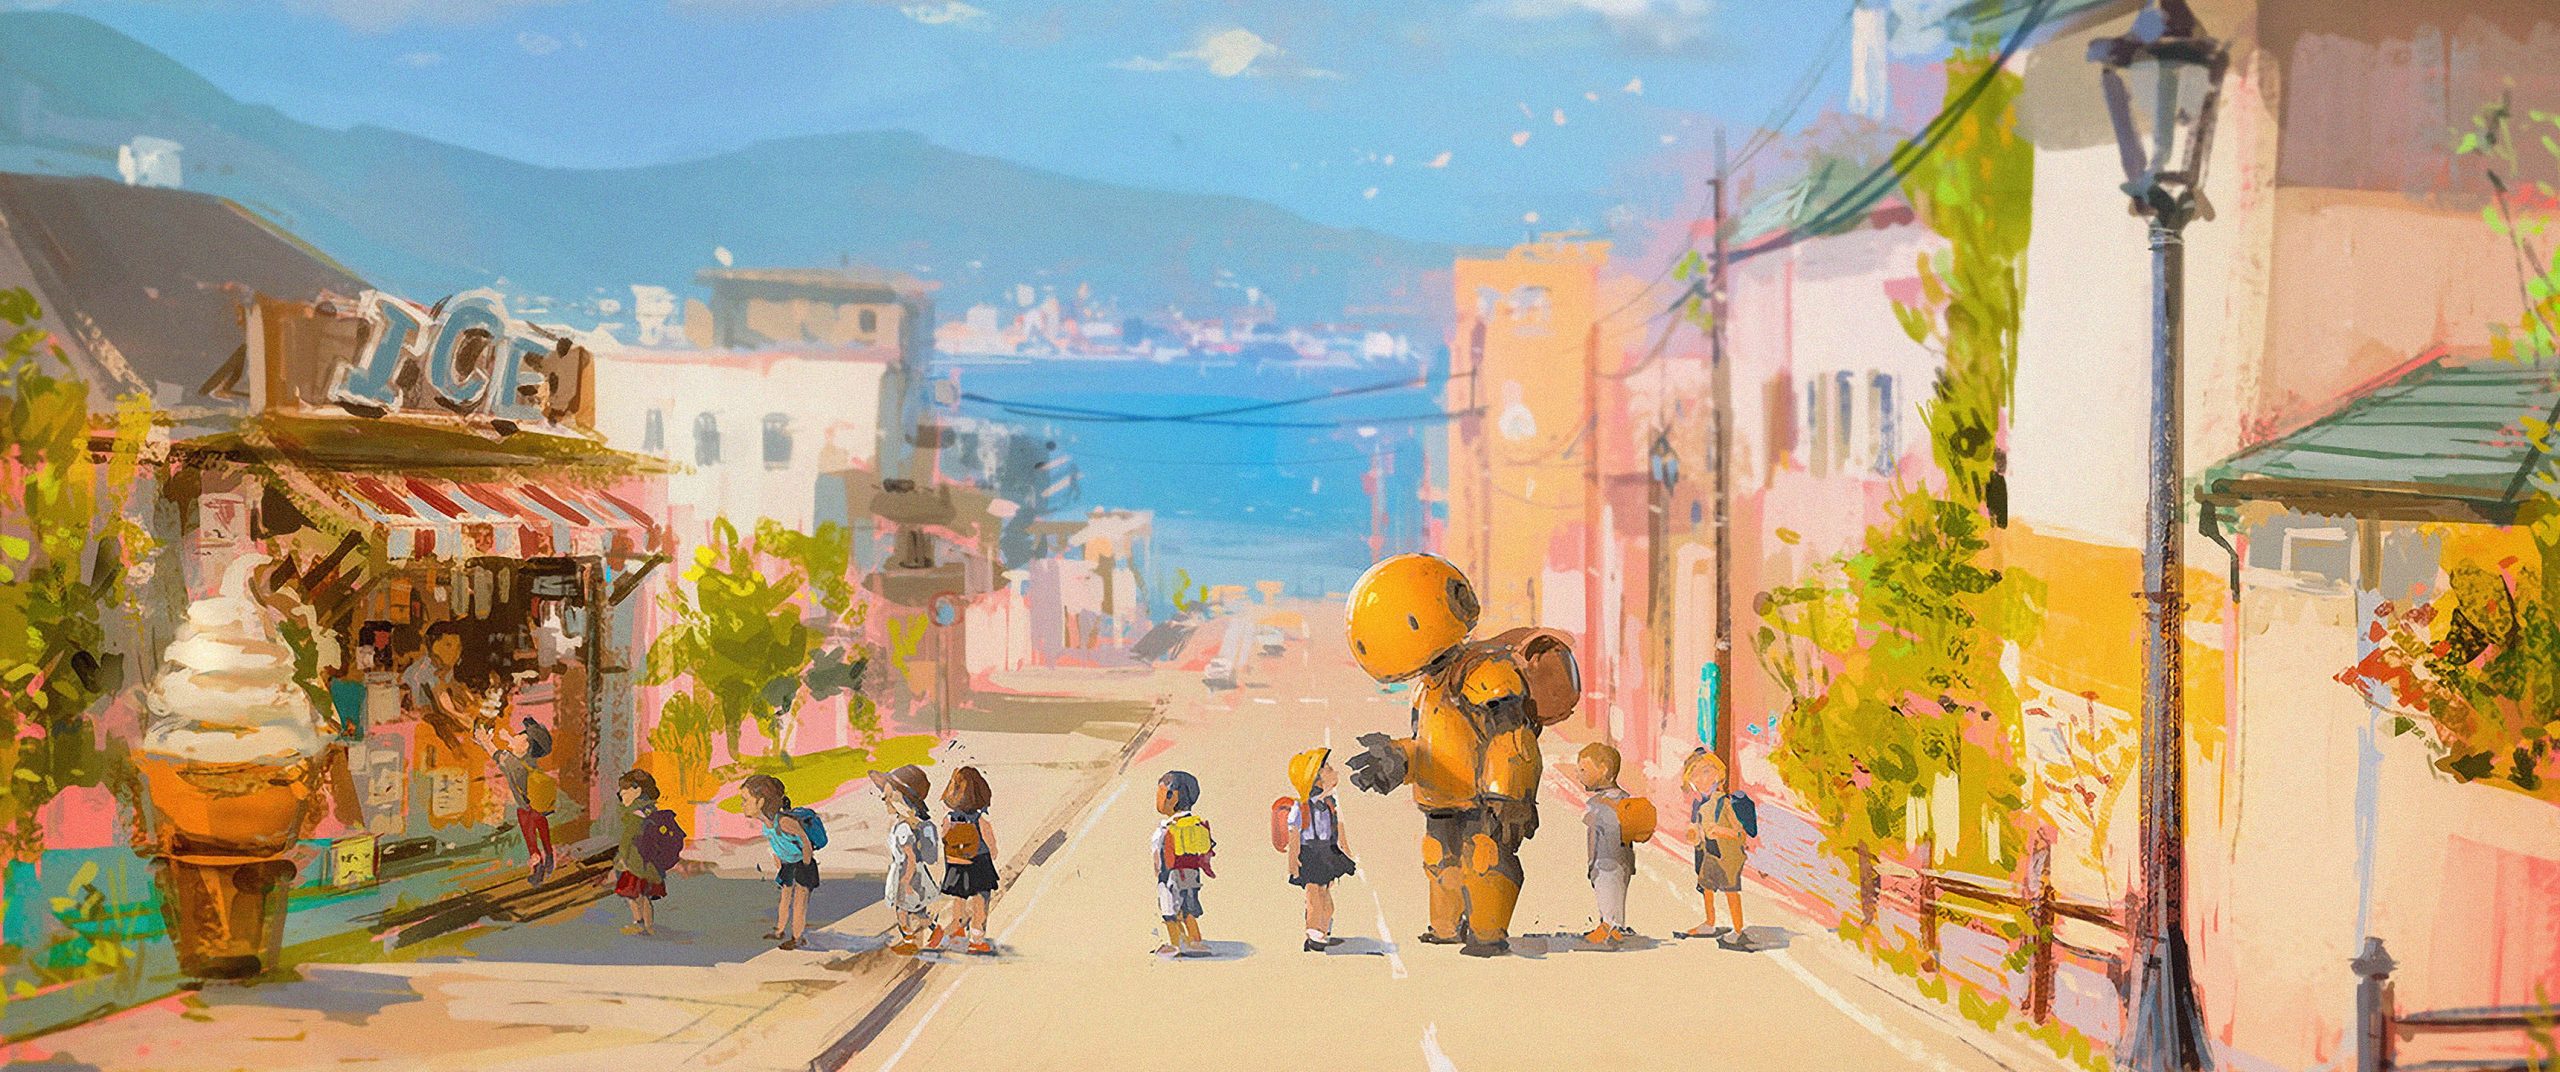 Wallpaper Street, Robot, Beach, Sea, Children, Anime